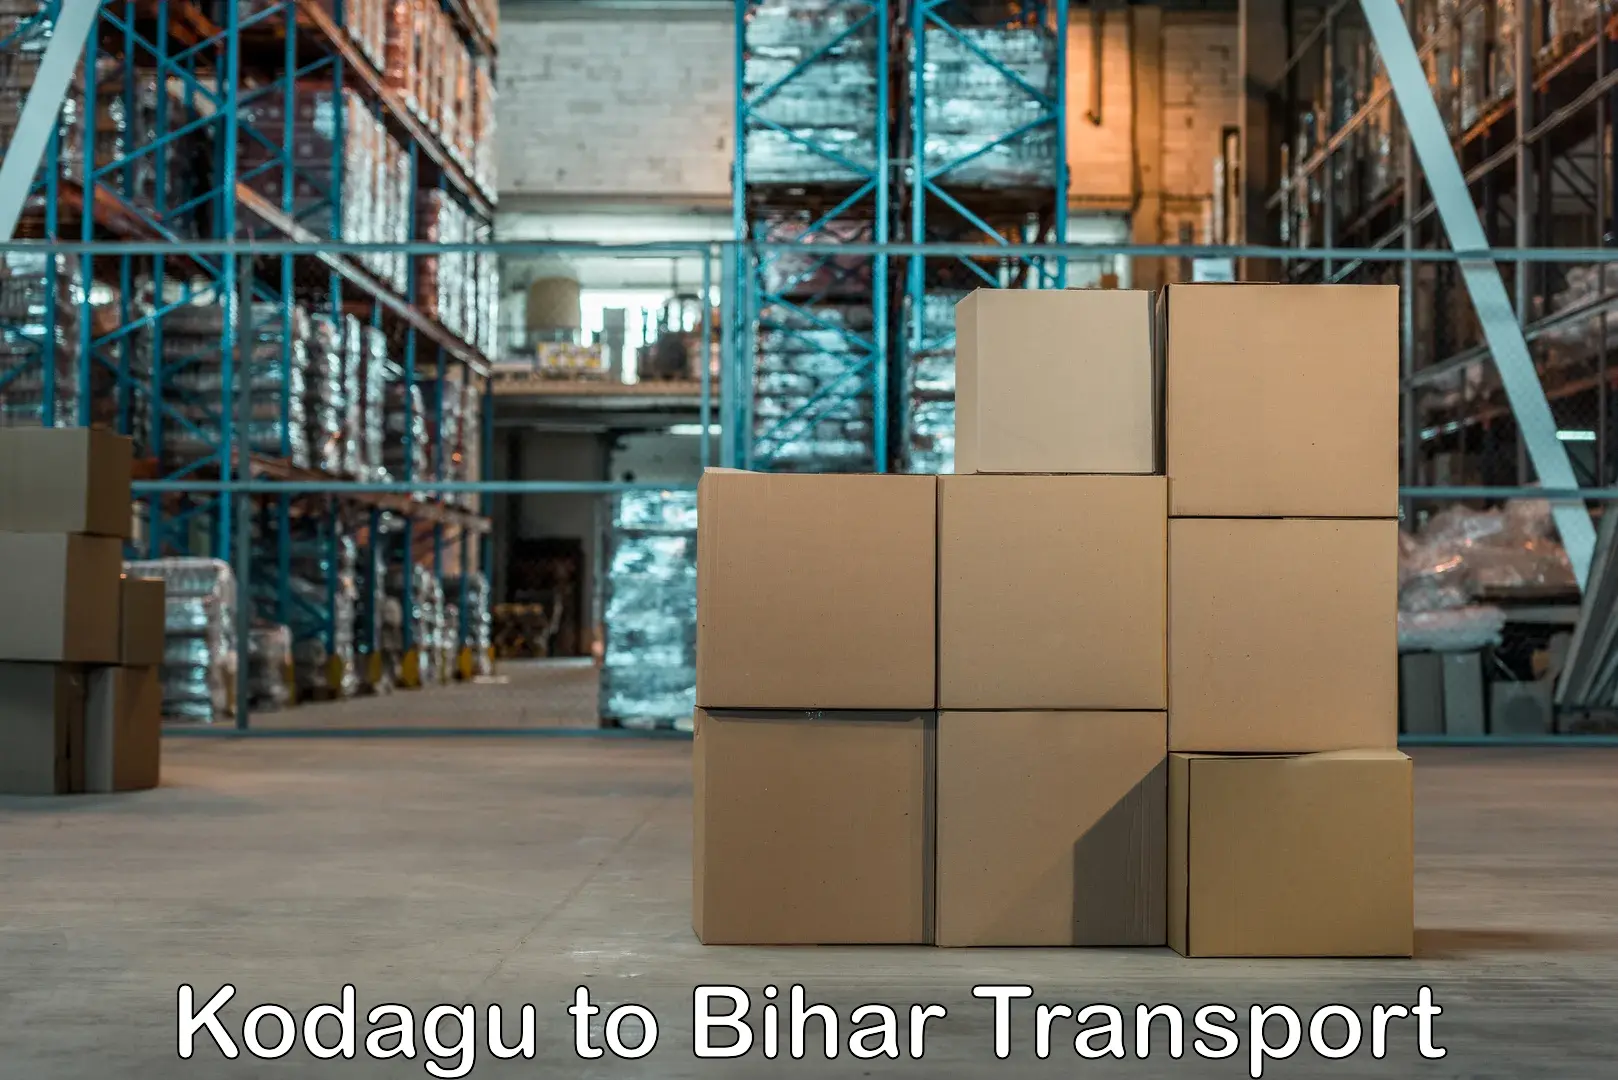 Nearest transport service Kodagu to Bihar